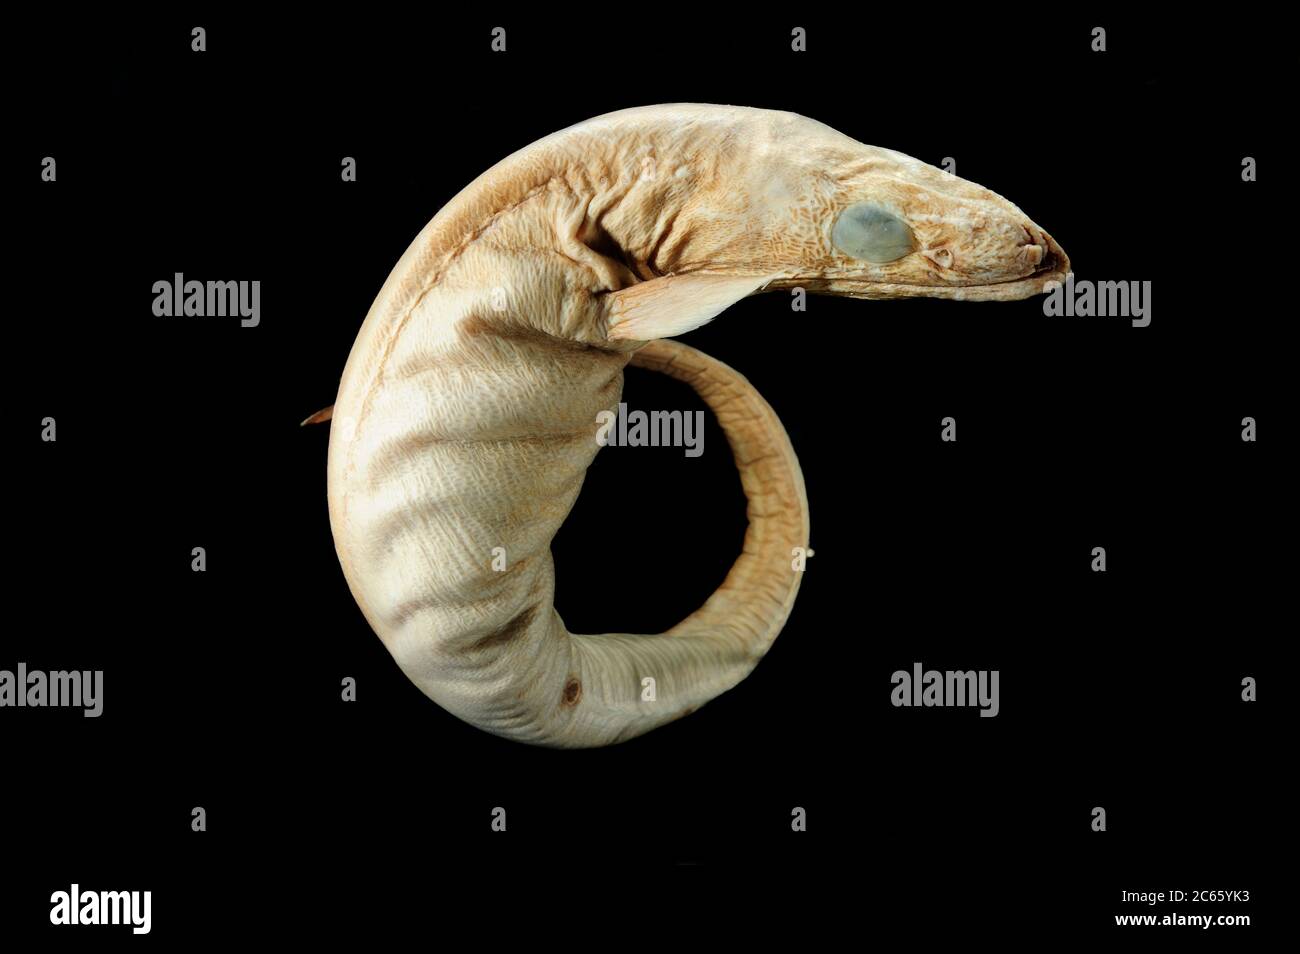 Anguille à gorge (Synaphobranchus kaupii) la photo a été prise en collaboration avec l'Université du Musée zoologique de Hambourg Banque D'Images